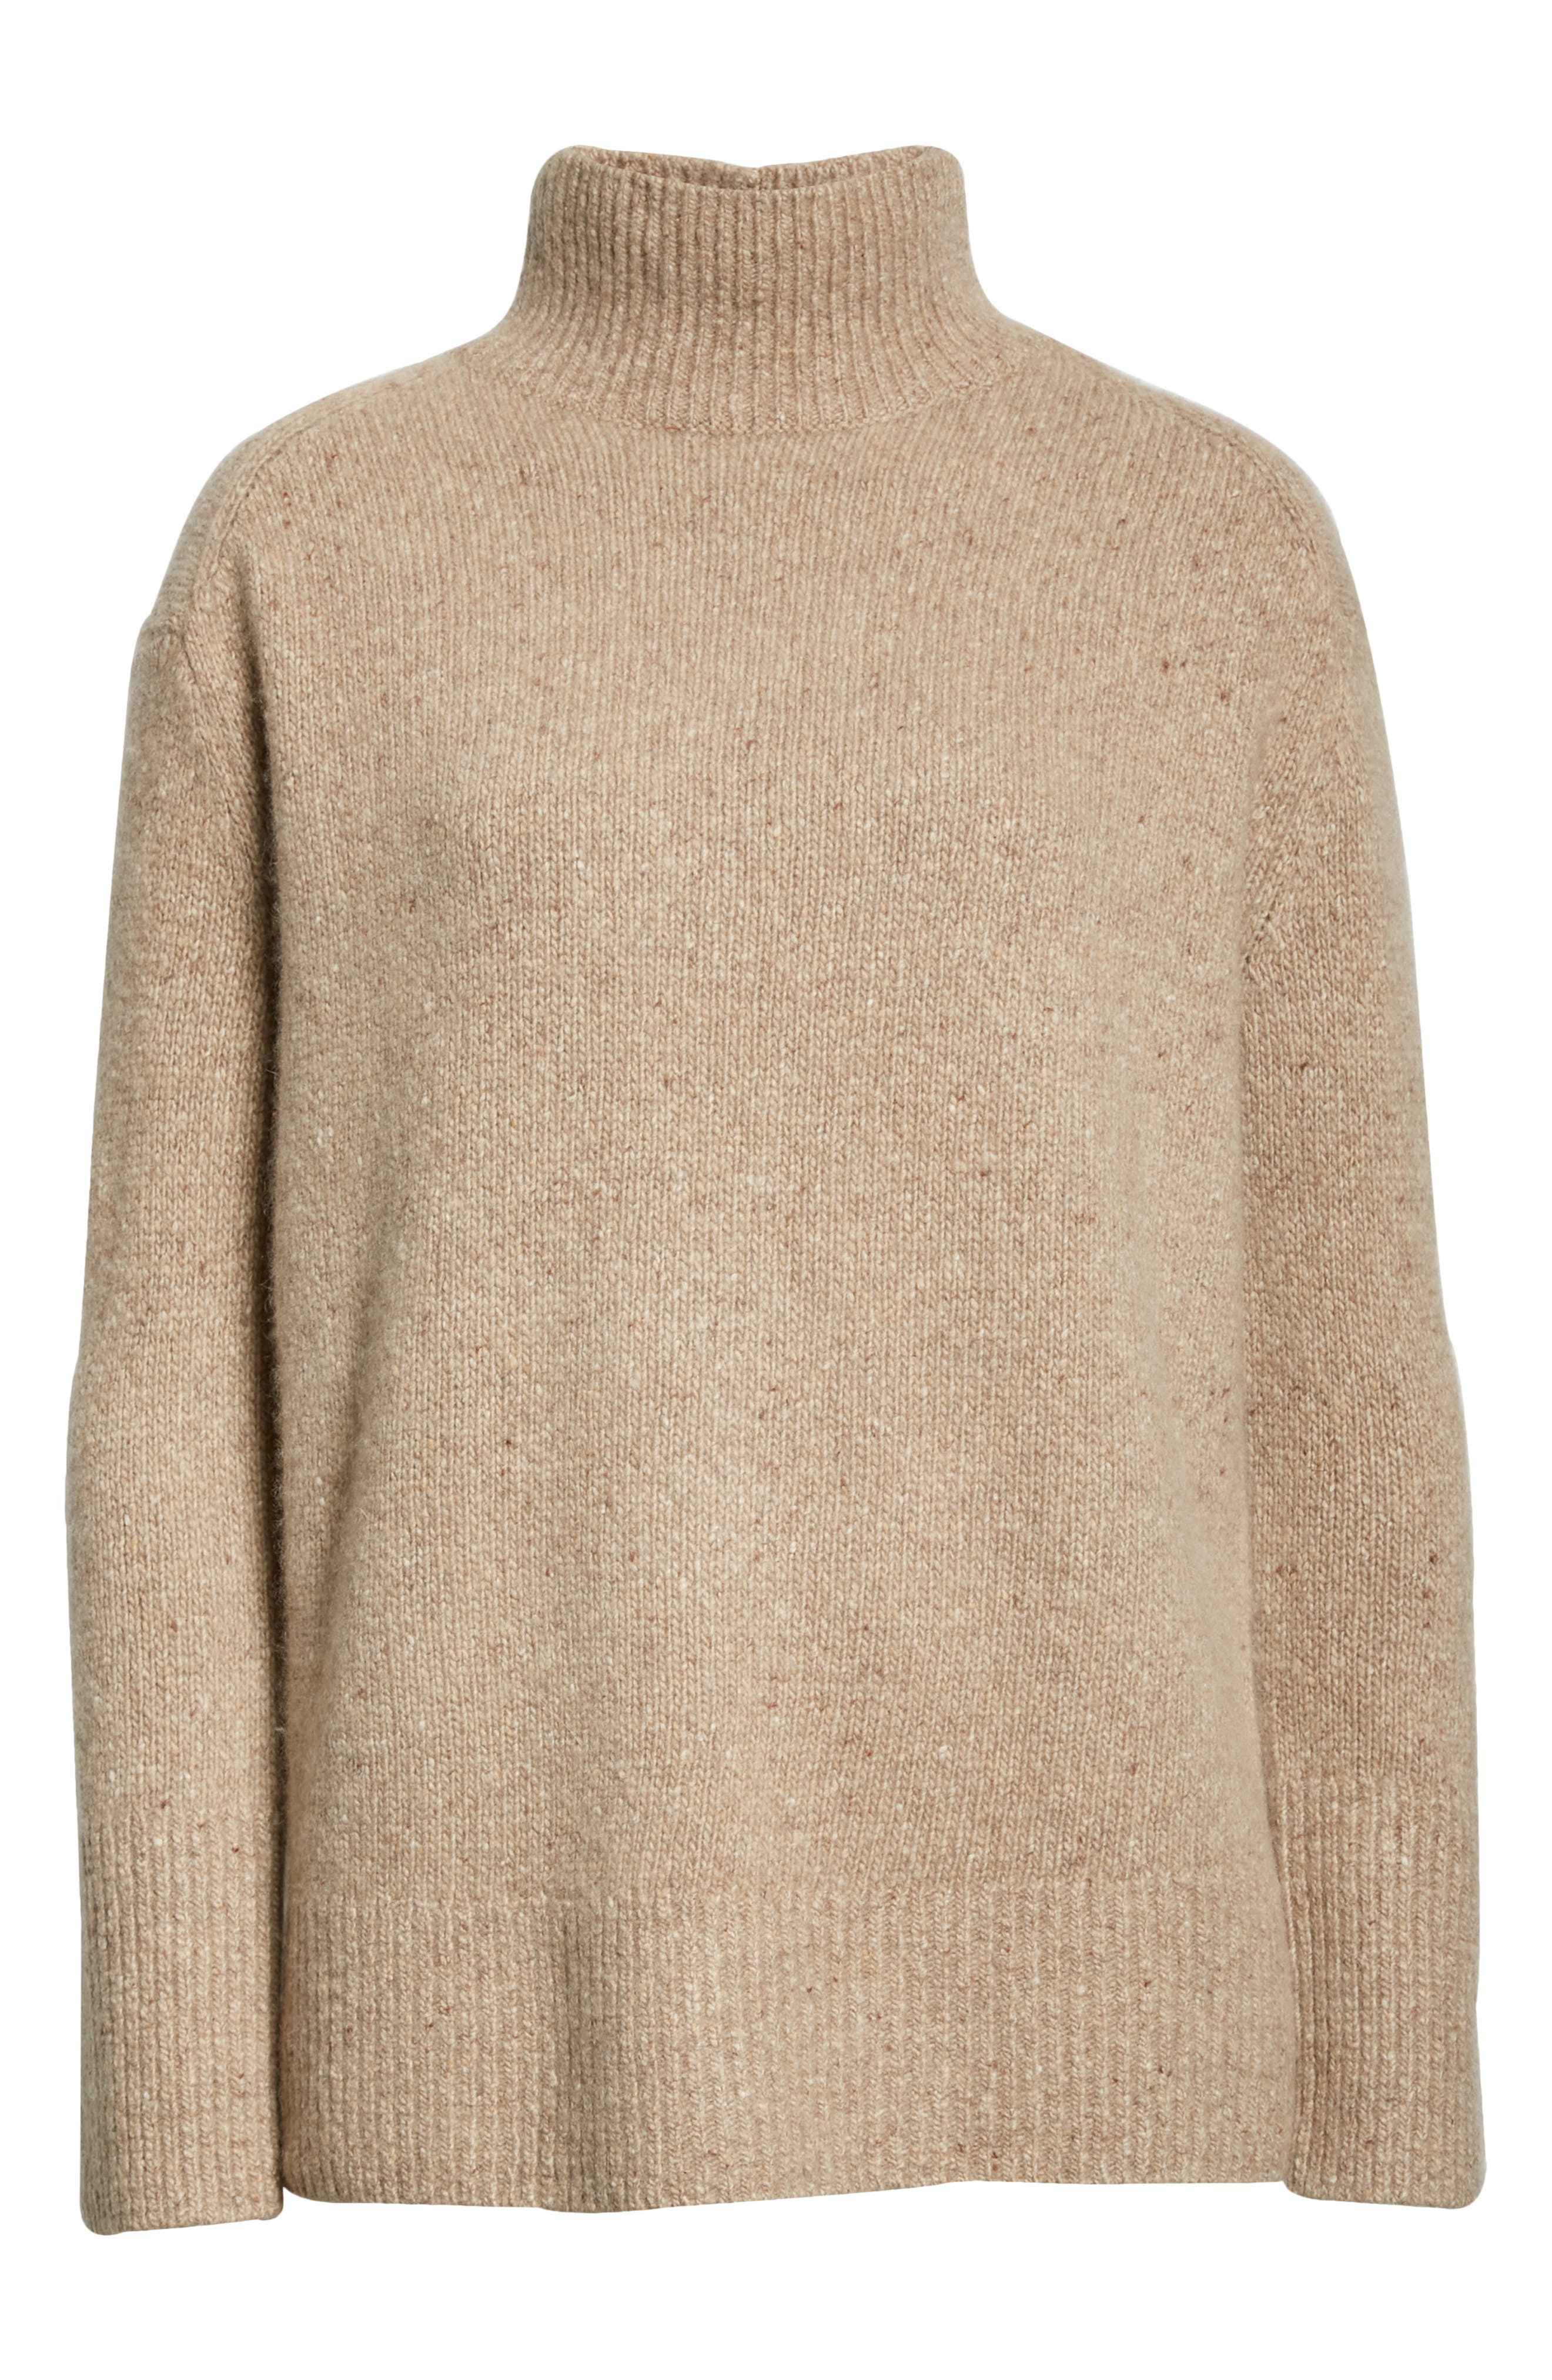 Vince Donegal Side Slit Cashmere Turtleneck Sweater